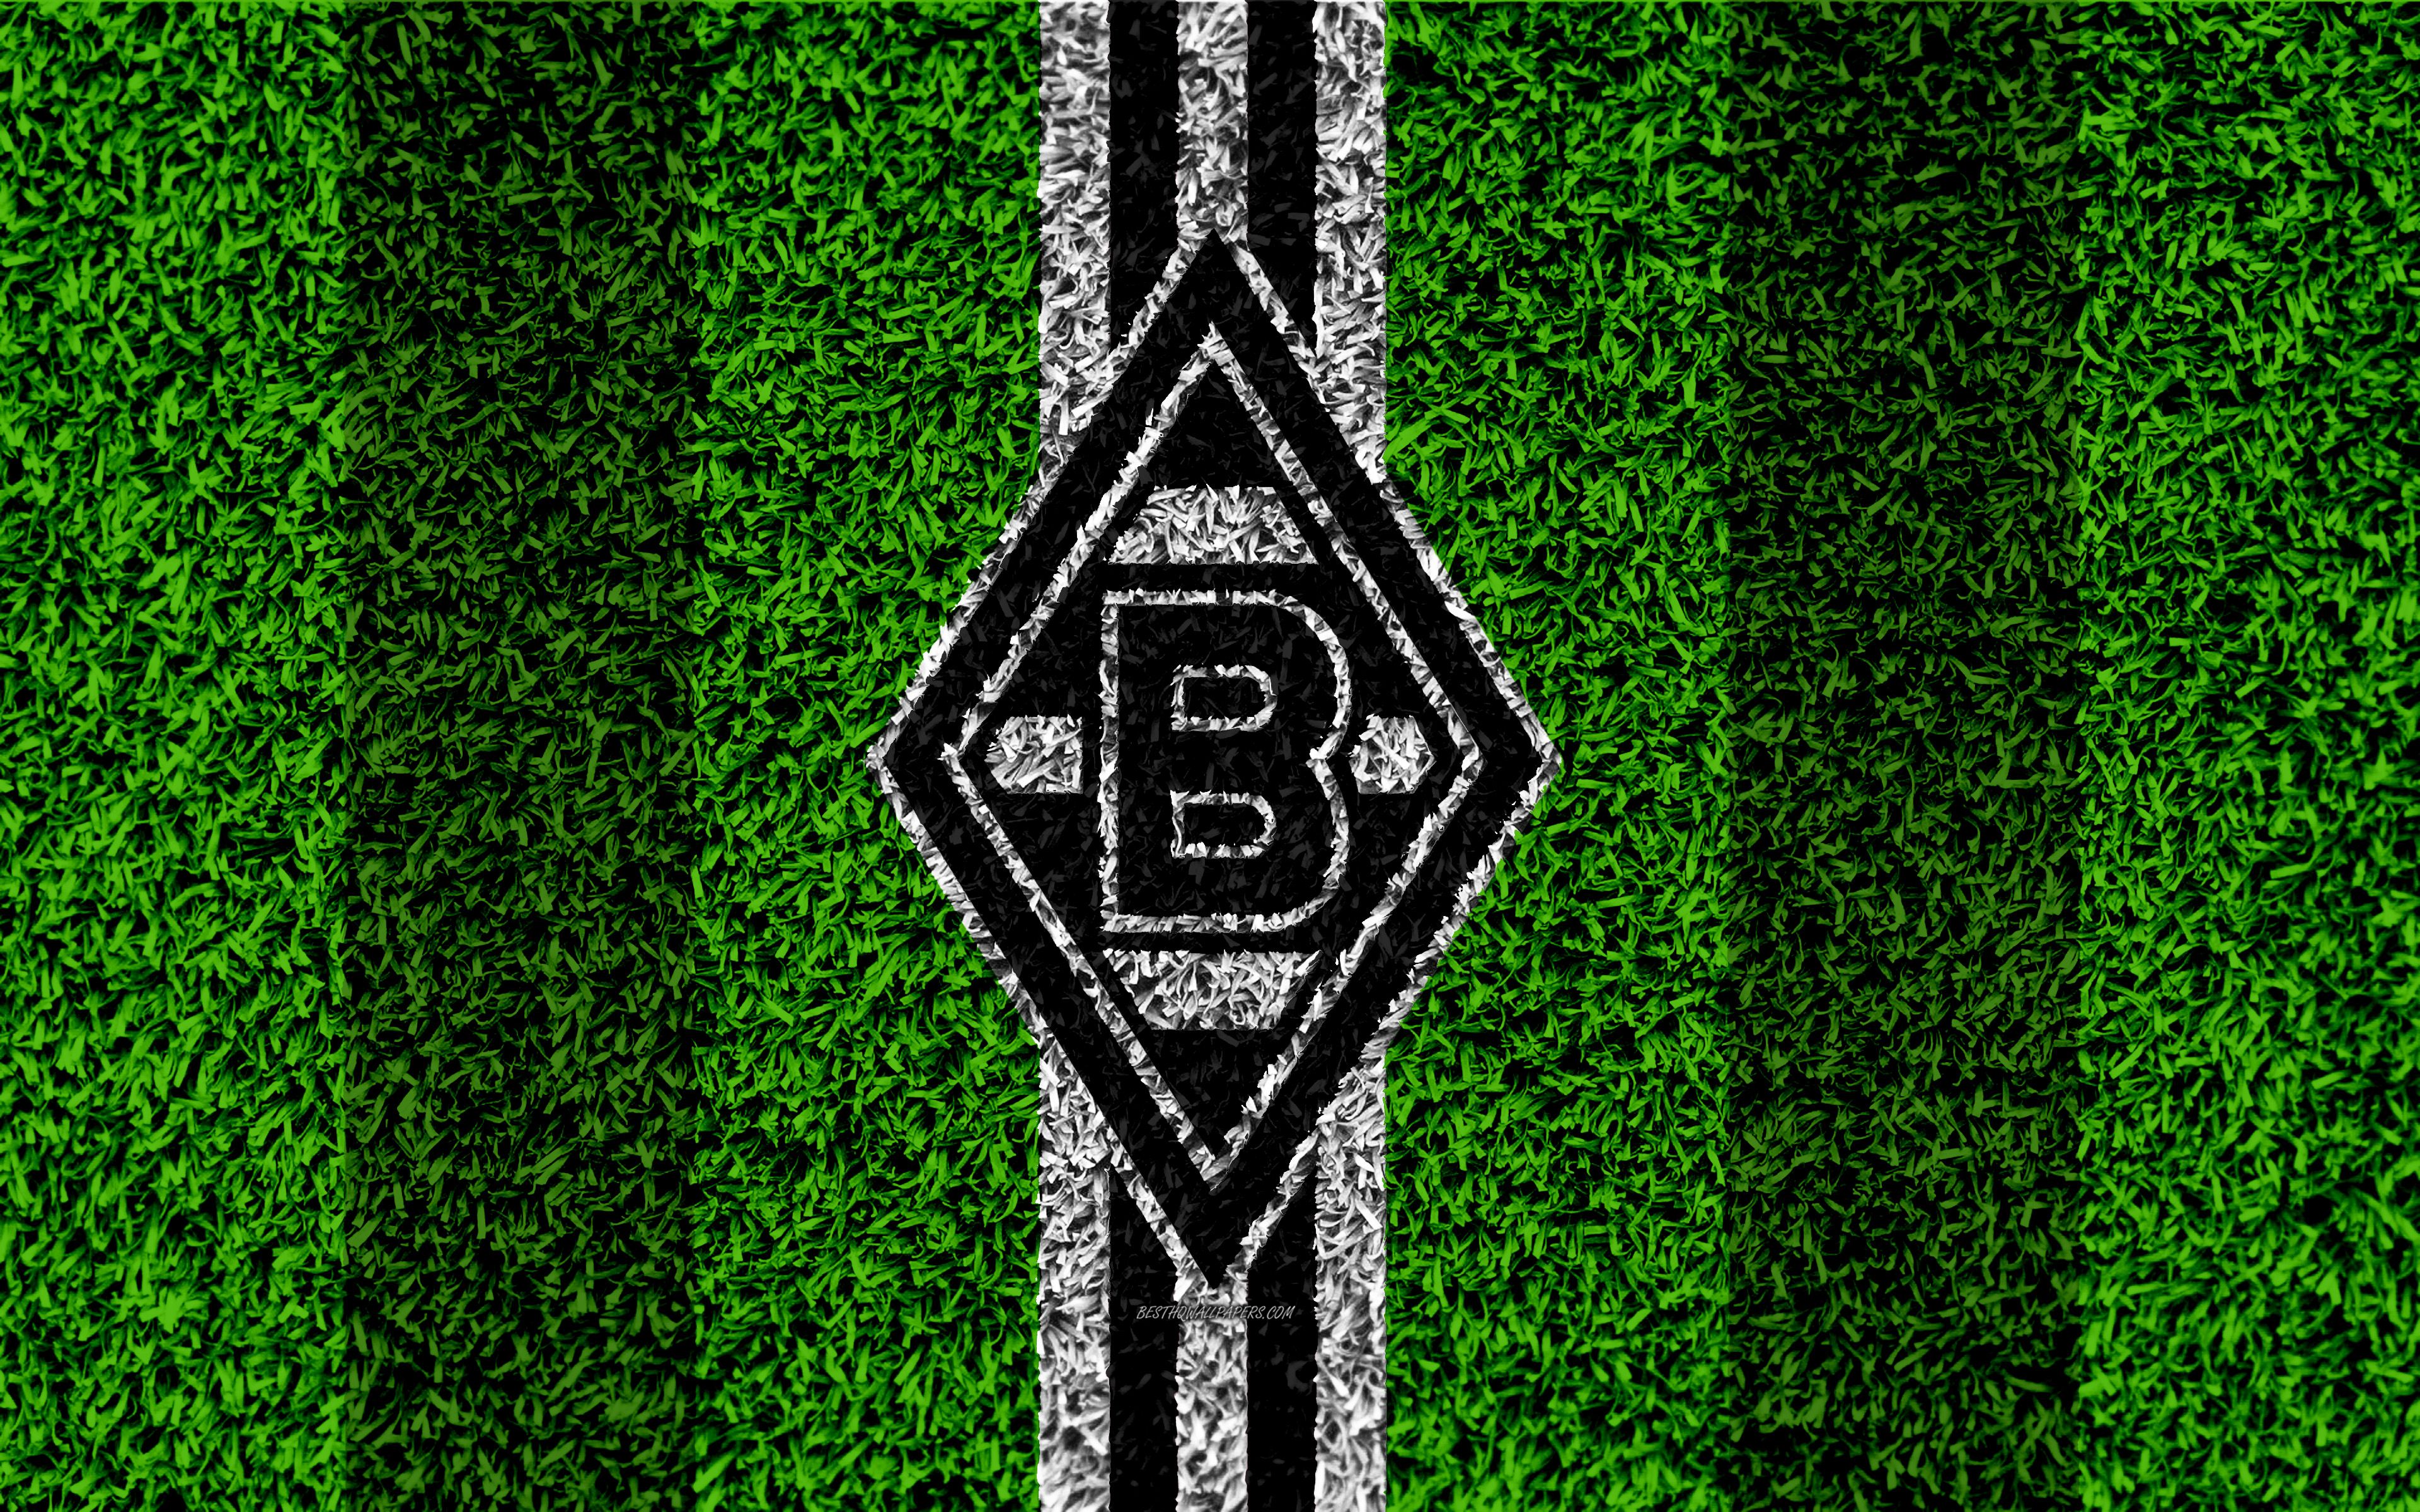  Borussia Mönchengladbach Desktop Hintergrundbild 3840x2400. Herunterladen hintergrundbild borussia monchengladbach, 4k, dihäresen football club, fußball lawn, logo, emblem, grass texturen, oberliga, mönchengladbach, germany, fußball mit einer auflösung zu überwachen 3840x2400. Bilder auf dem desktop